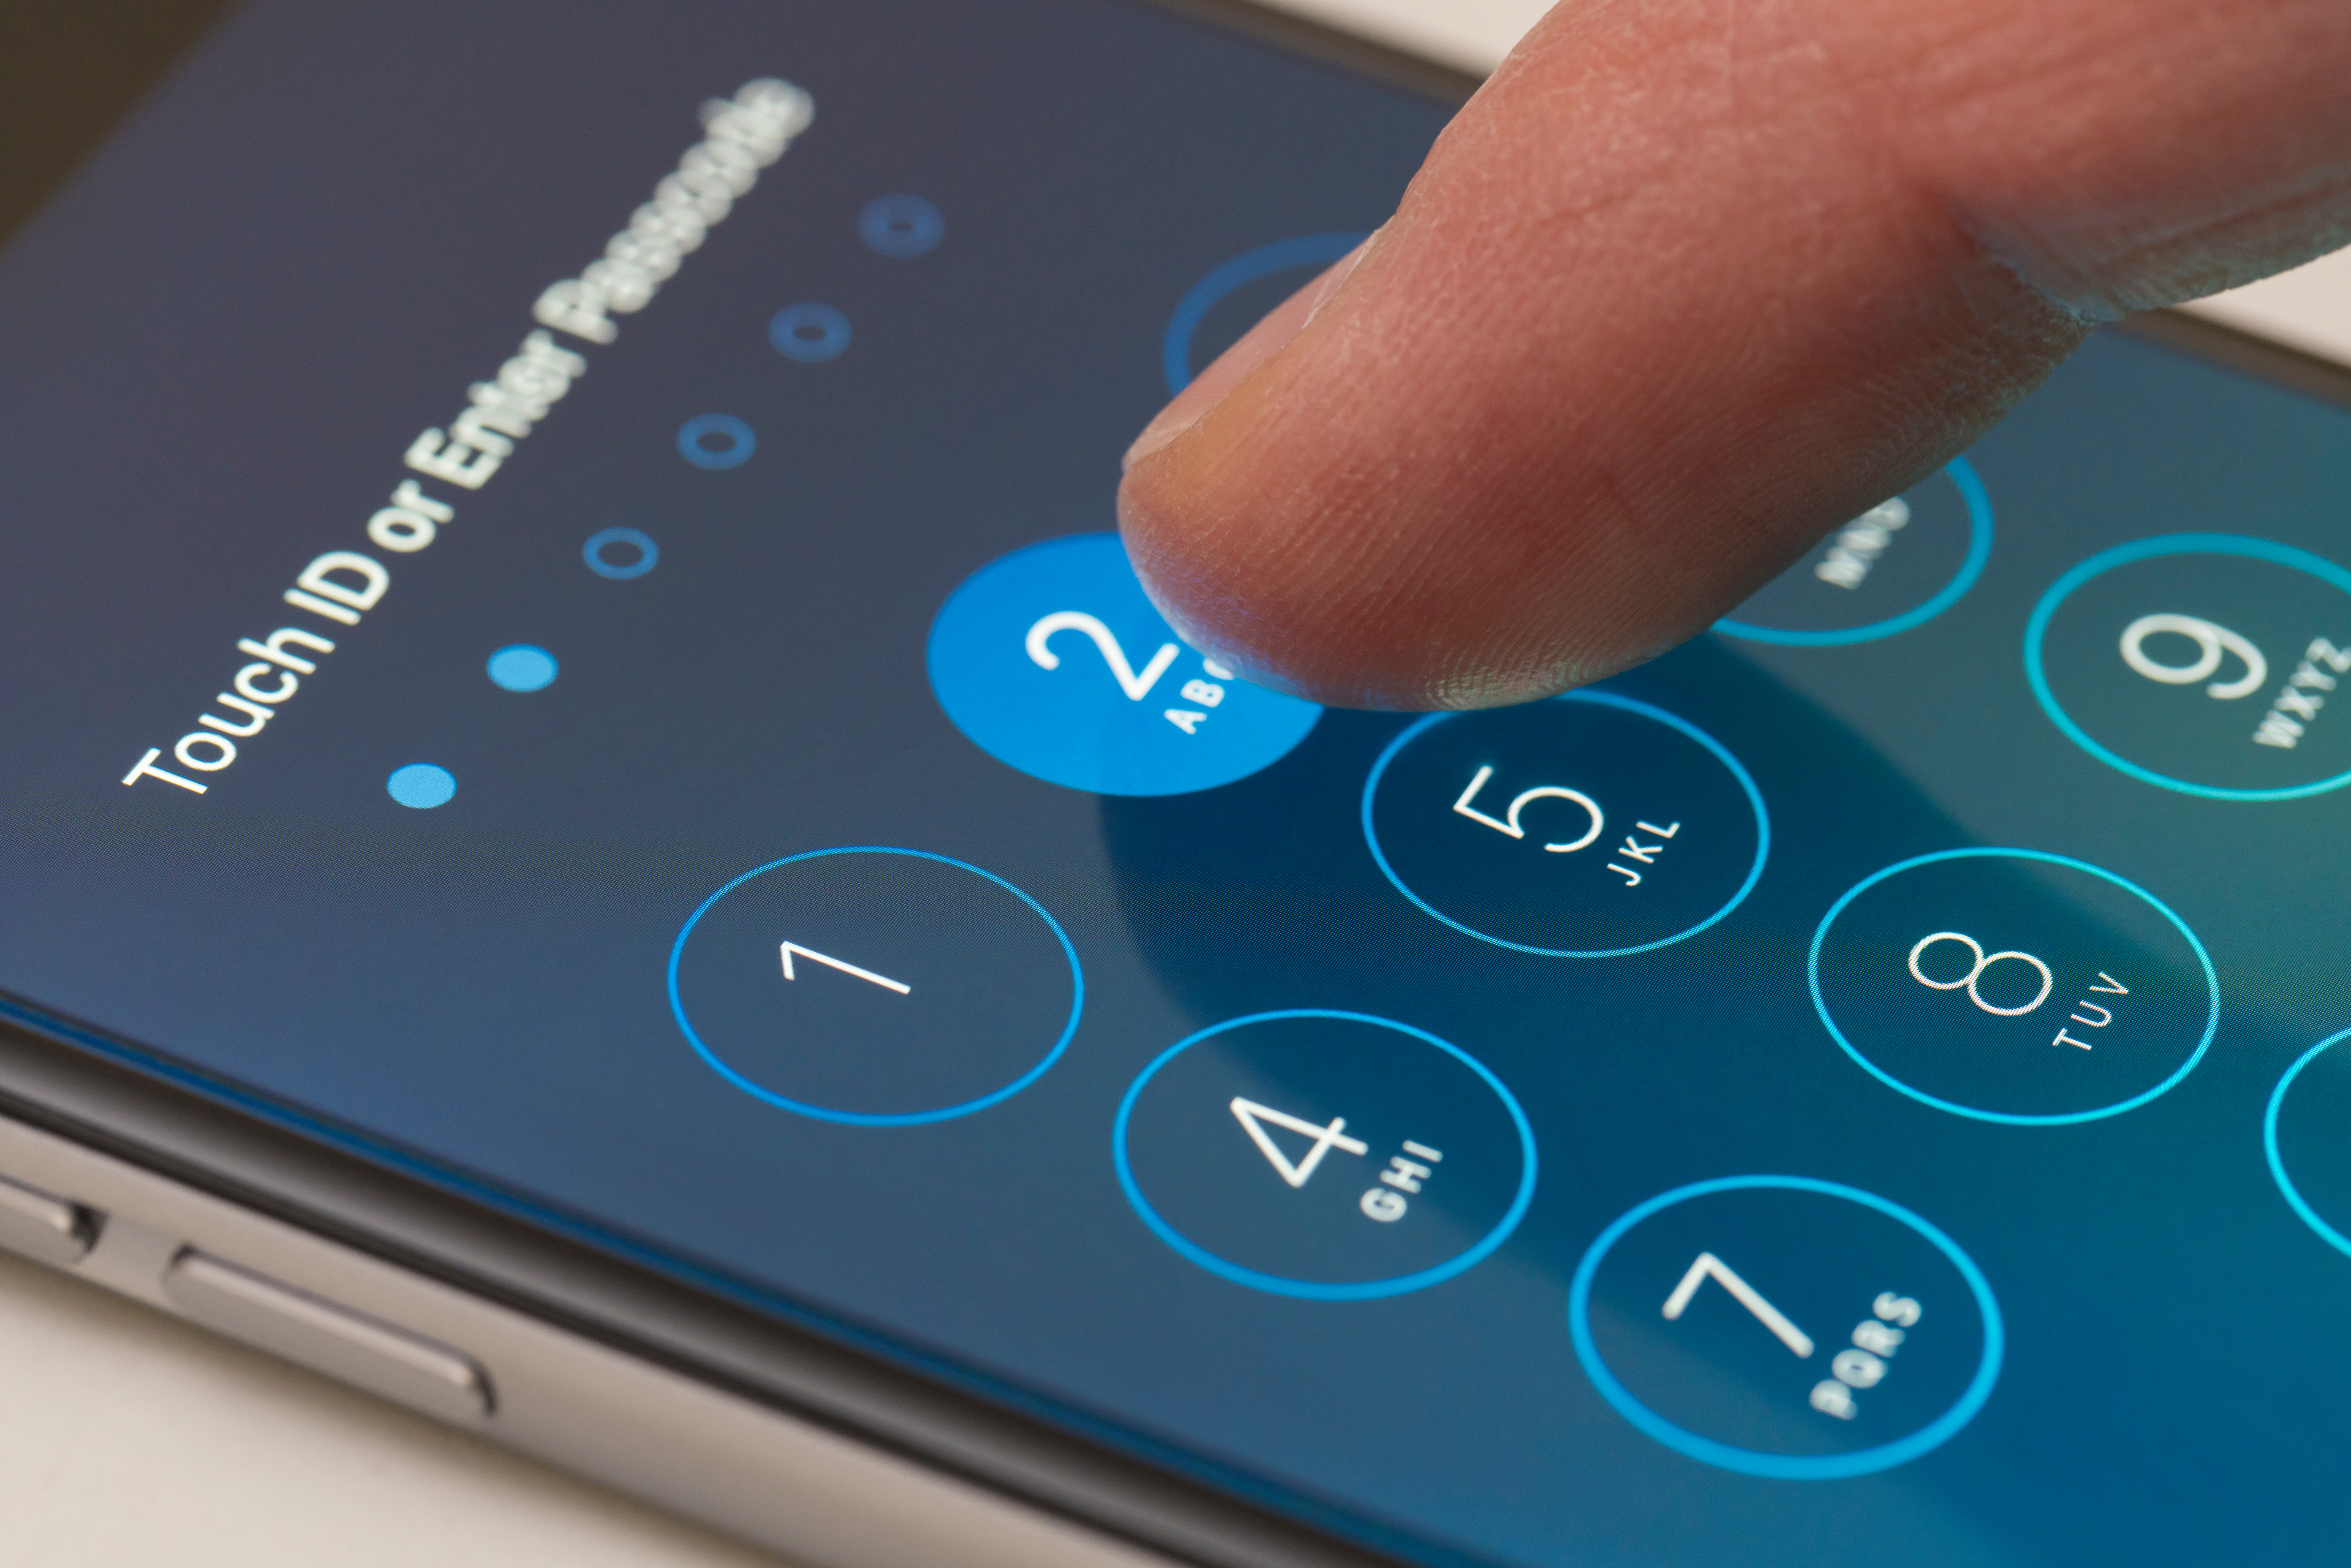   Donith cho rằng một chiếc iPhone có nghĩa là bạn an toàn mặc dù đã có ít cuộc tấn công hack lớn hơn vào Apple thiết bị